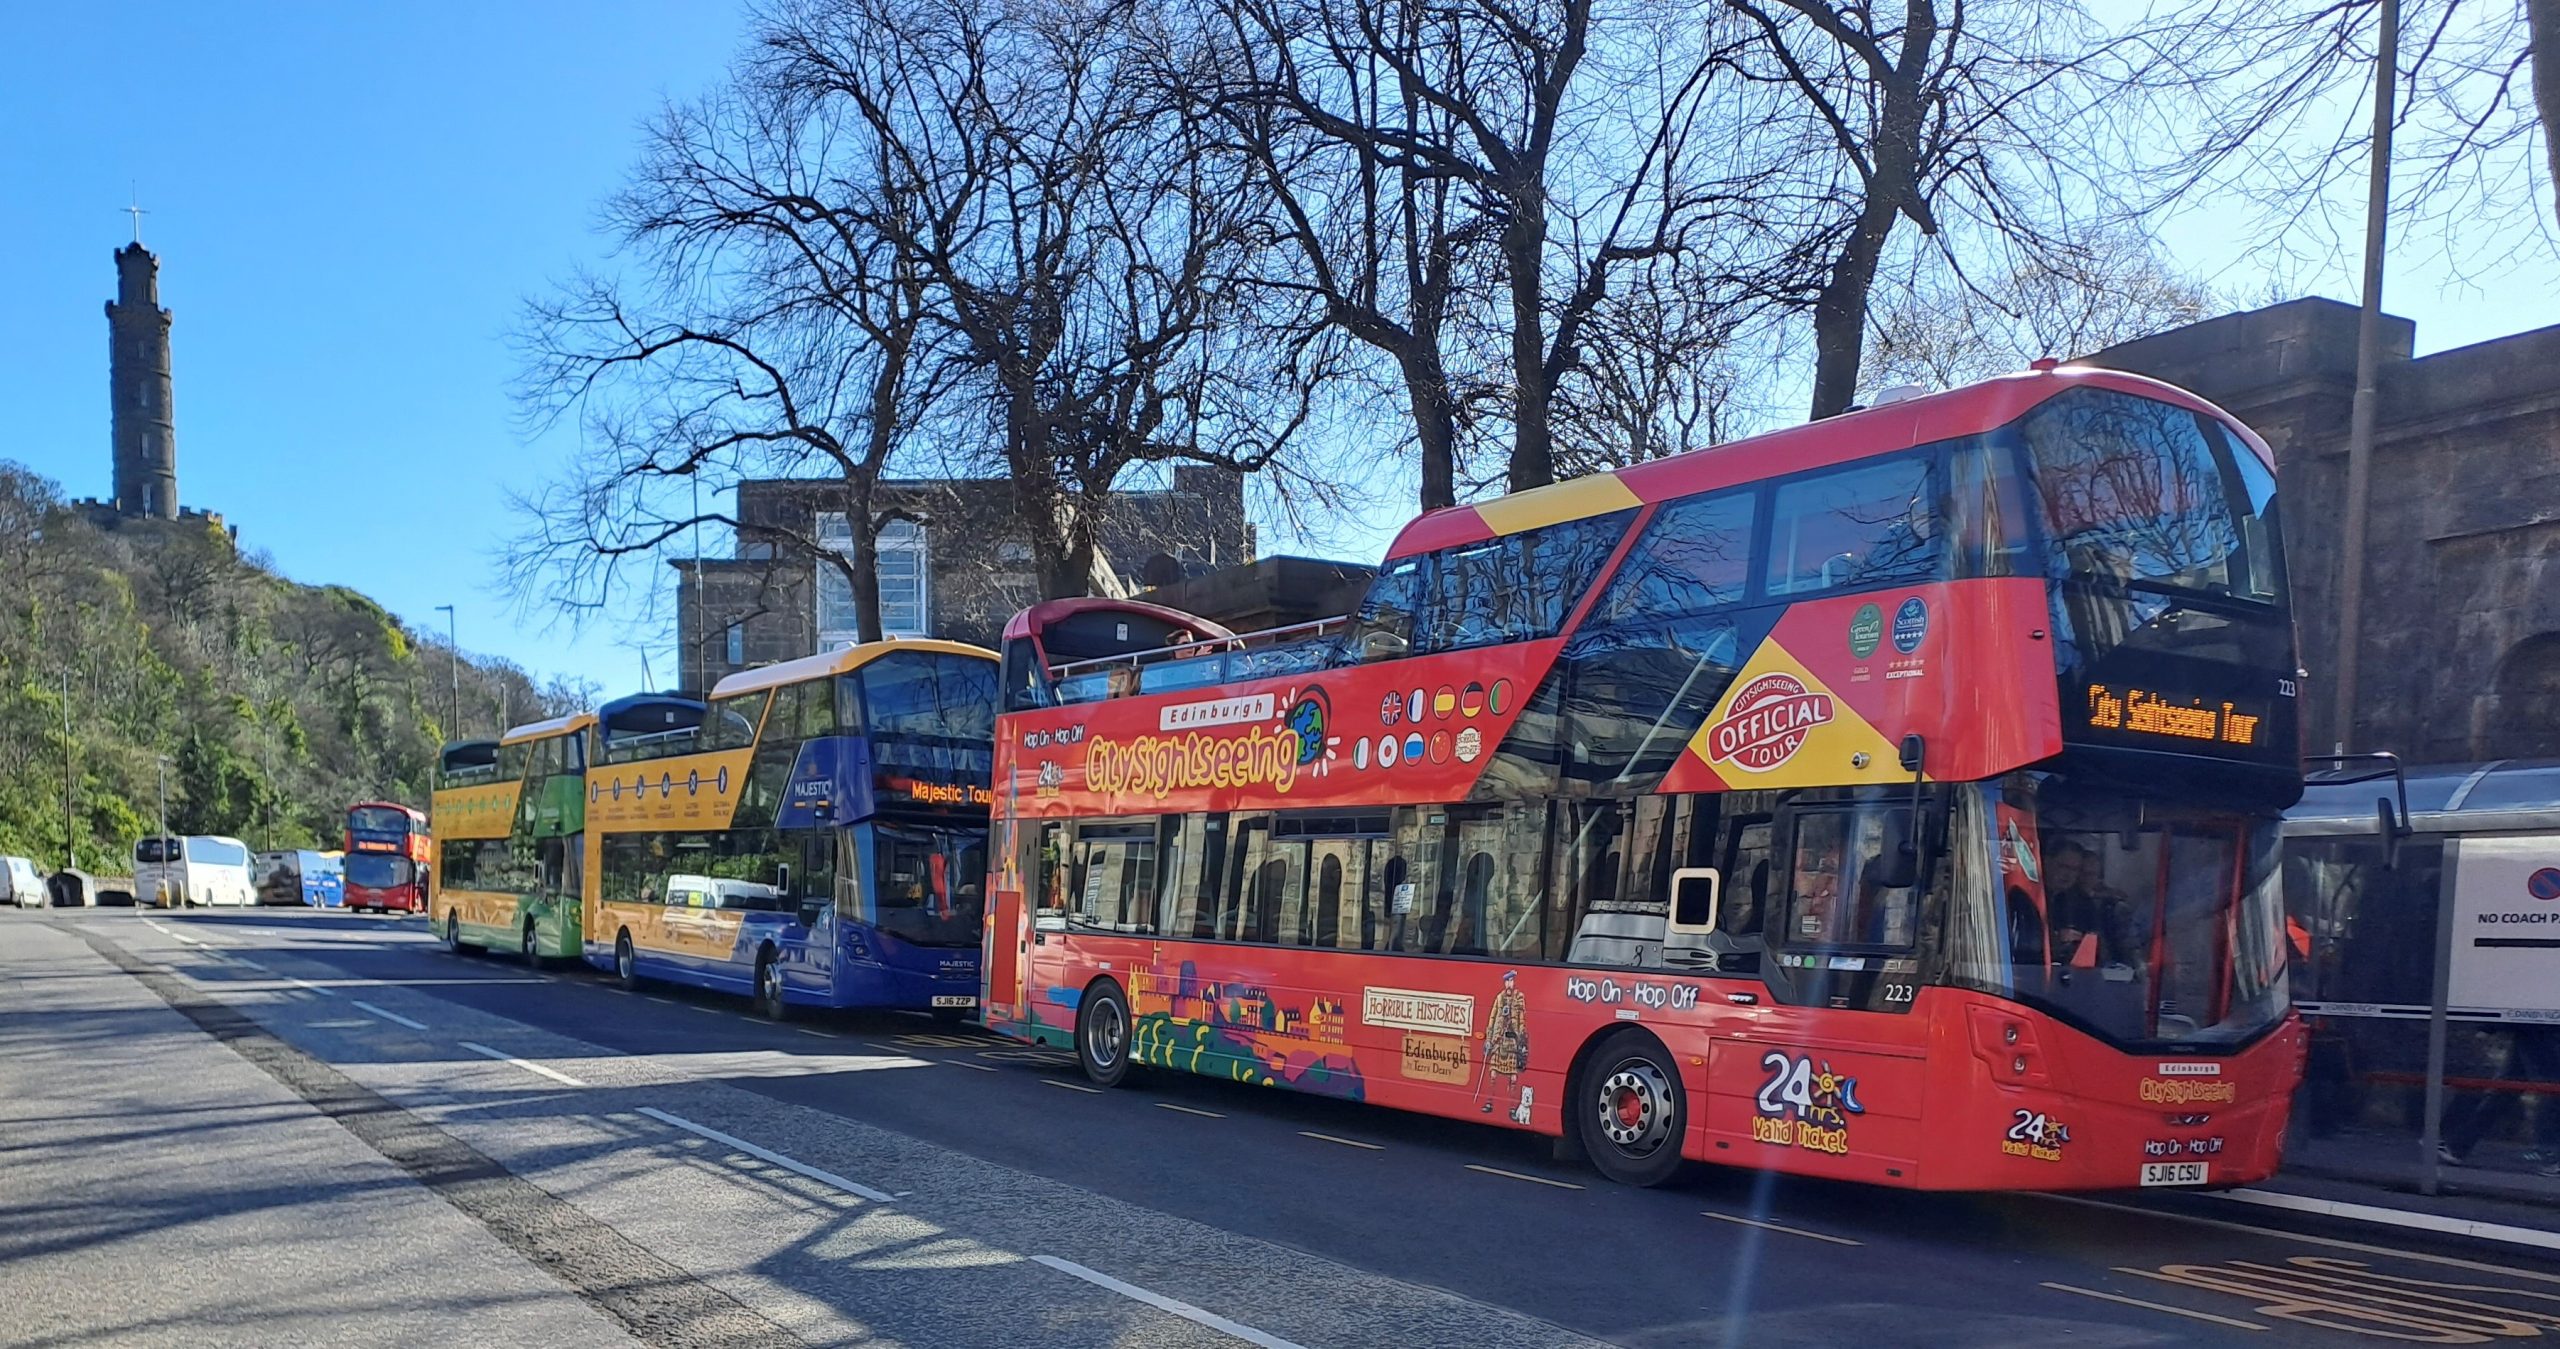 Image showing Edinburgh Bus Tours